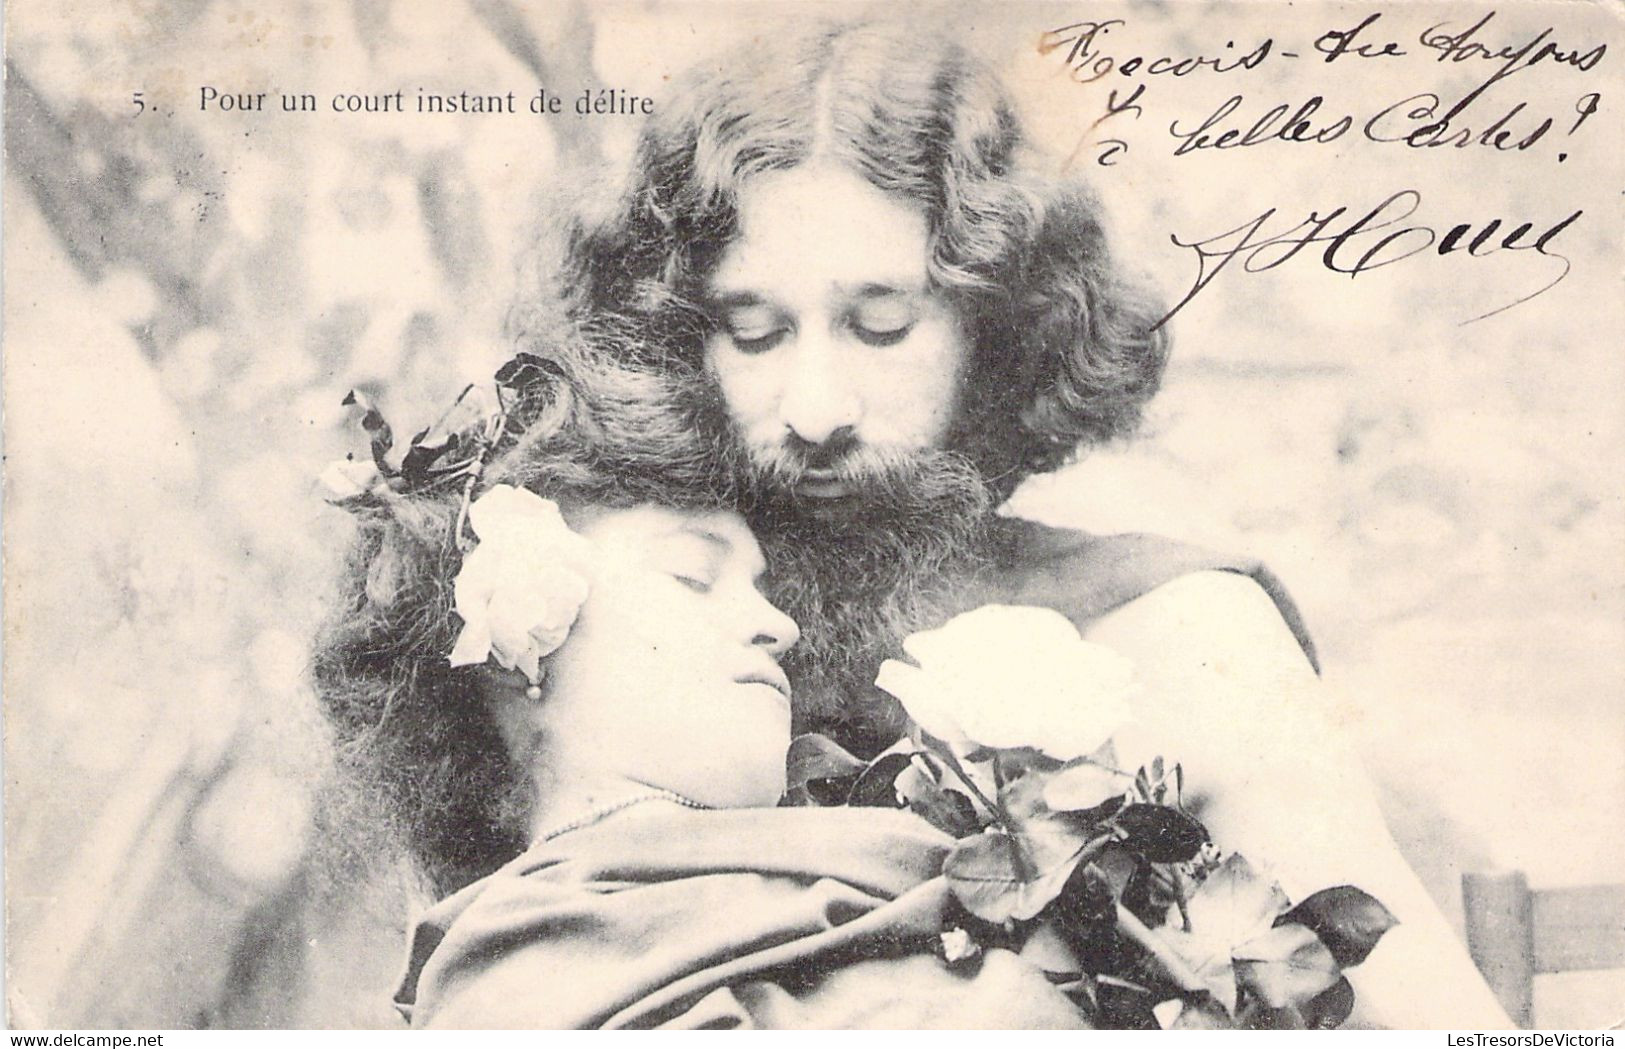 Lot de 6 cartes - Couple homme barbu et femme avec fleurs dans les cheveux - histoire d'amour et de séduction - 1905